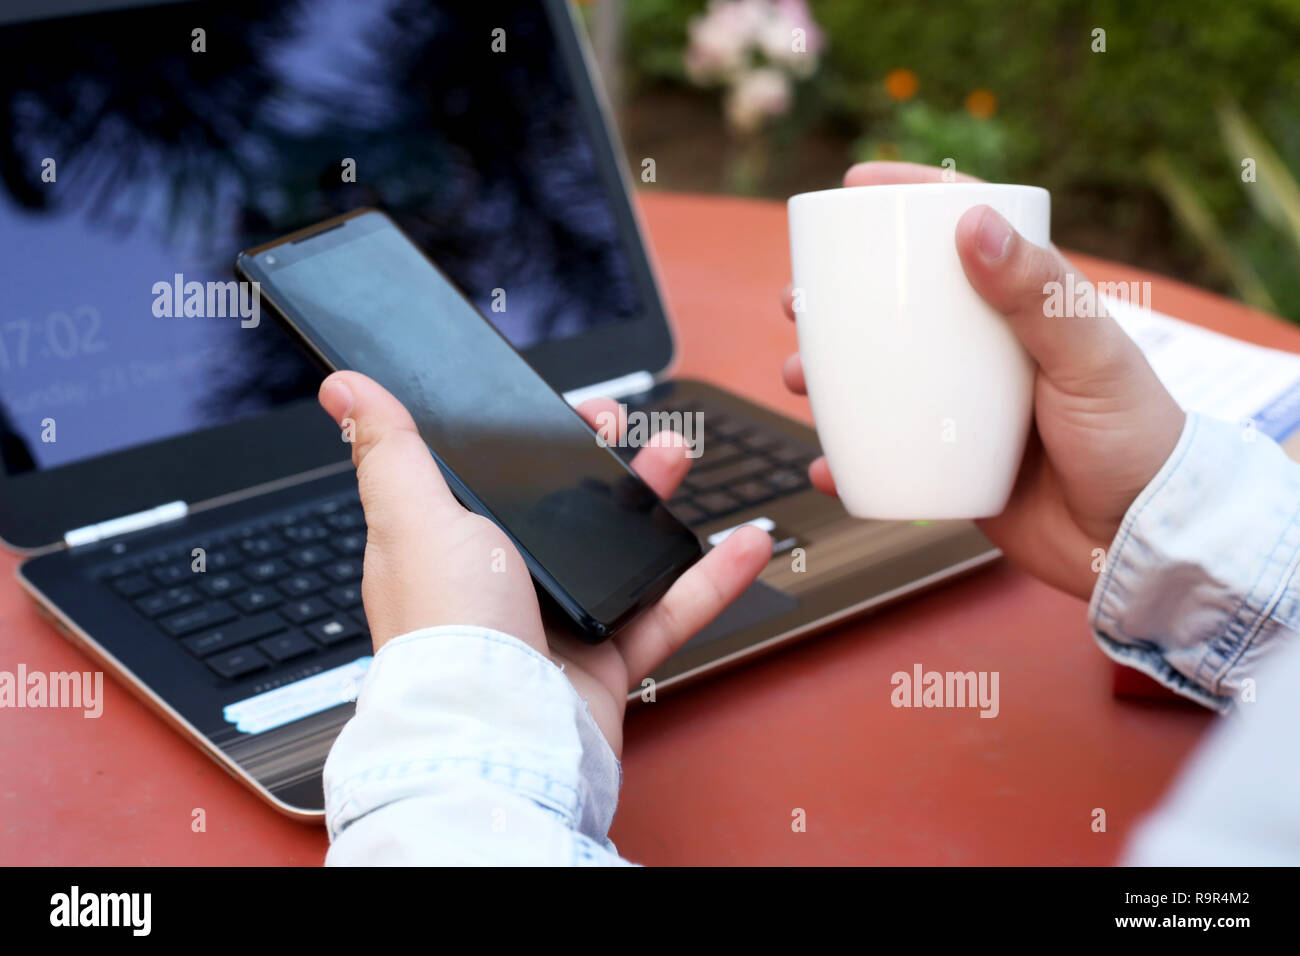 L'homme est mise en attente et tasse de café dans la main avec un ordinateur portable sur la table. Banque D'Images